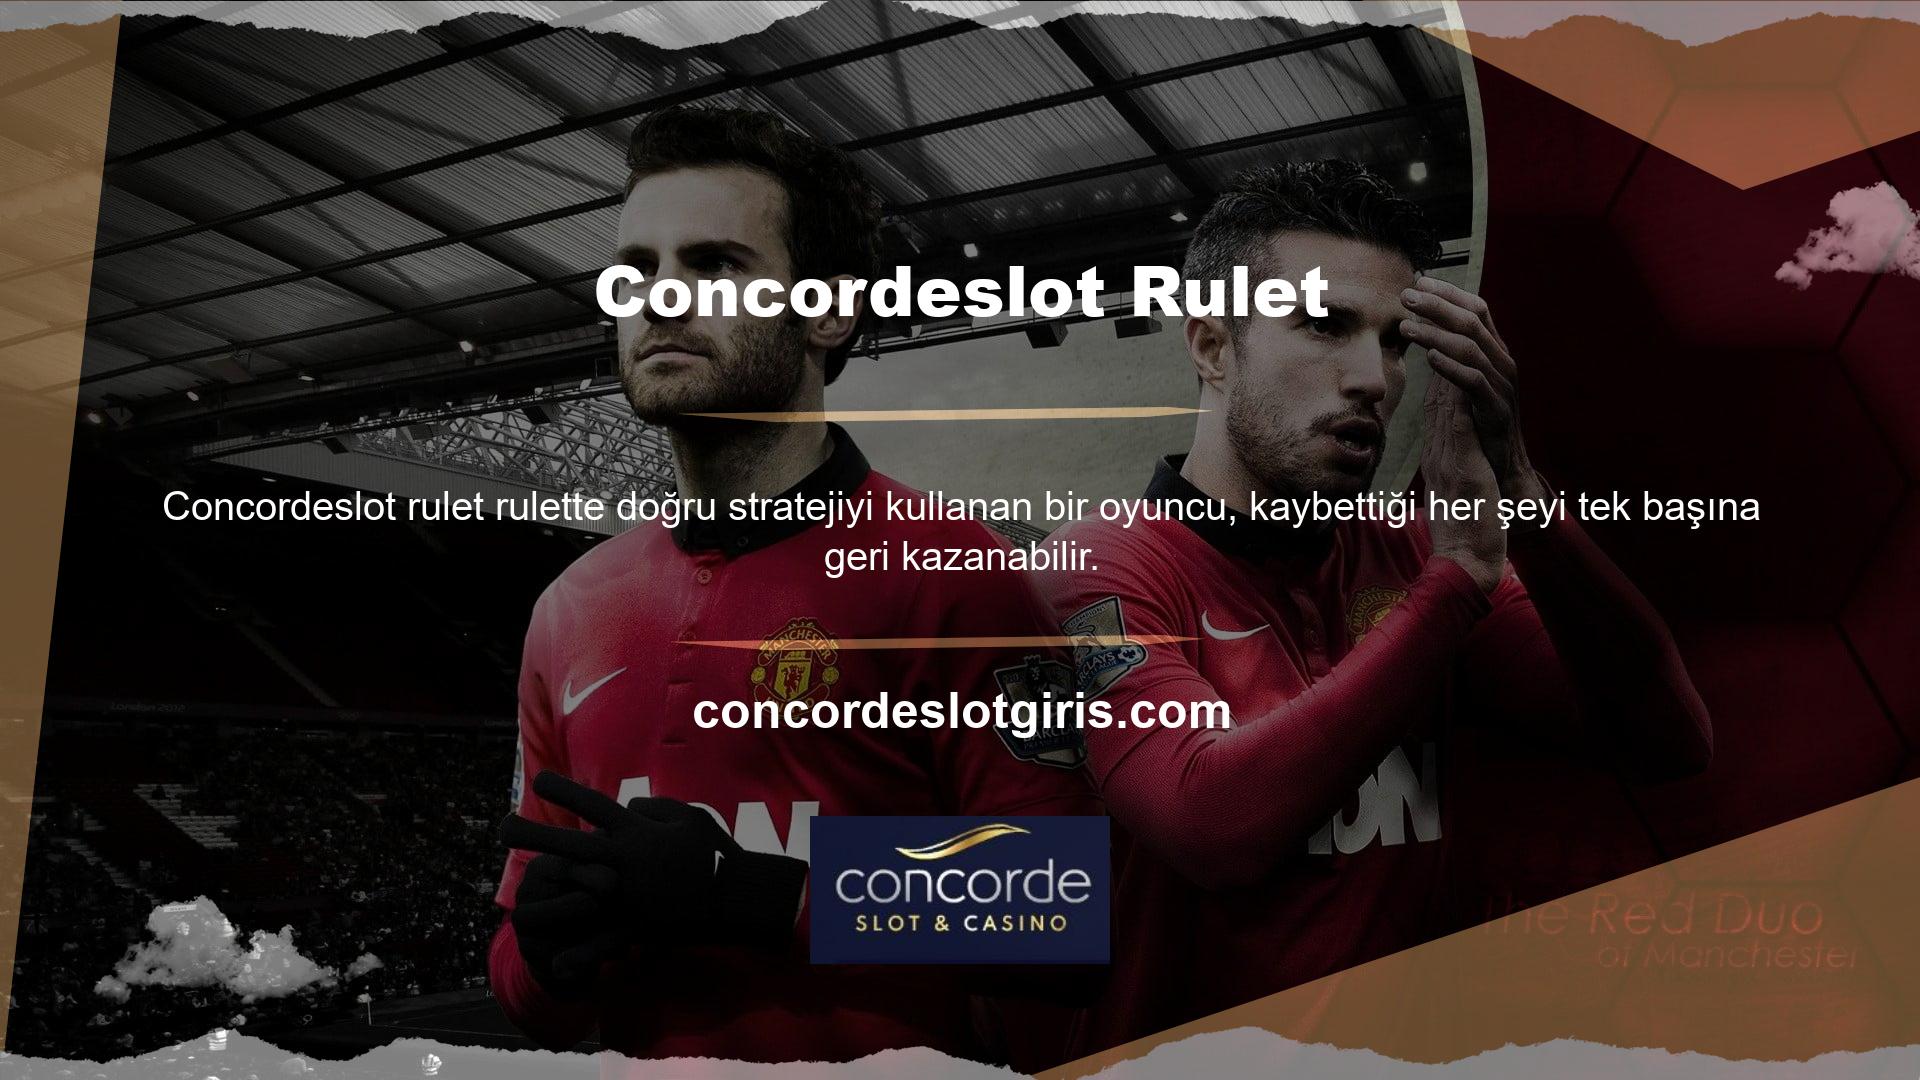 Concordeslot online casino sitesi, üyeliği kabul eden oyun meraklılarına Concordeslot rulet hizmeti sunan Türk casino sitelerinden biridir